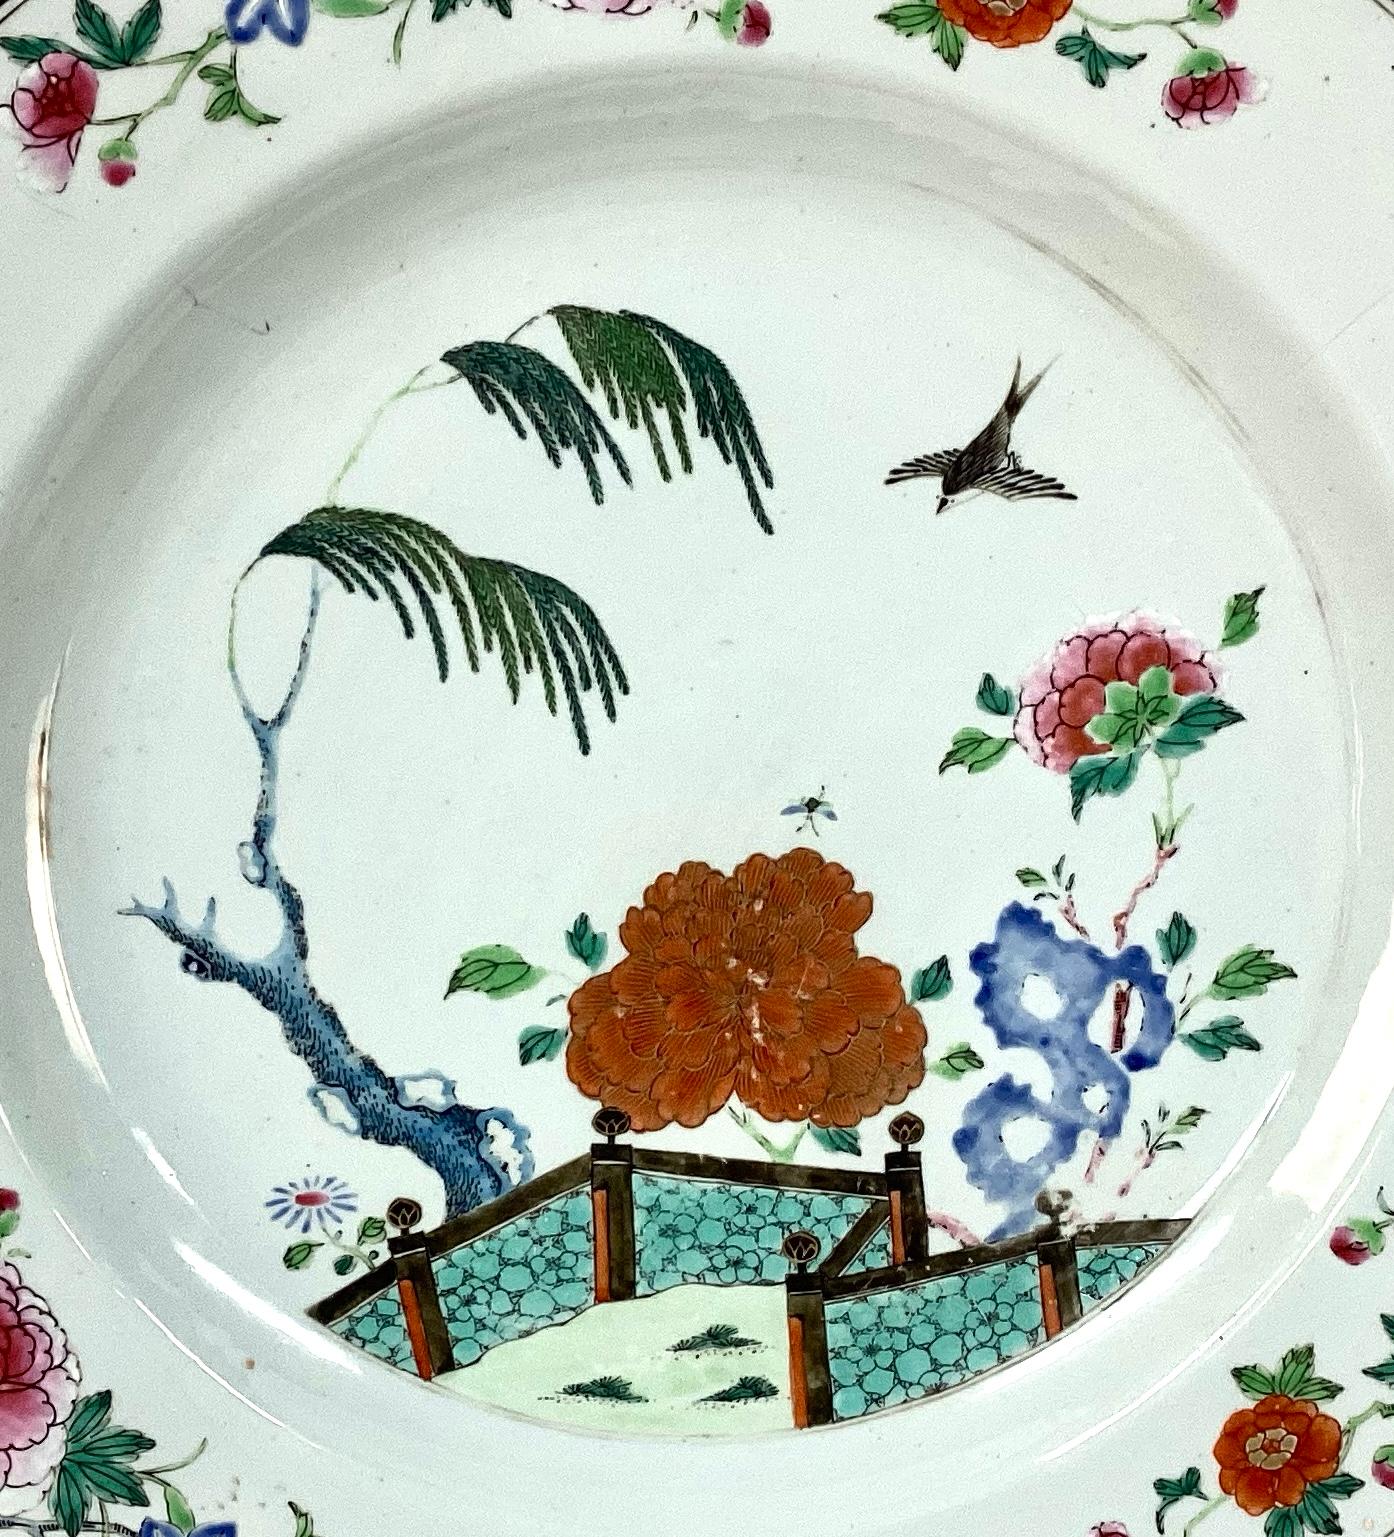 Große chinesische Export Qing Famille Rose Porzellanteller. Weißes Porzellan mit Vögeln, Blumen, Bäumen und Landschaften in schönen Rottönen, Rosa, Grün und Blau. Die Platte ist sehr groß und in ausgezeichnetem Zustand. Auf der Rückseite sind einige